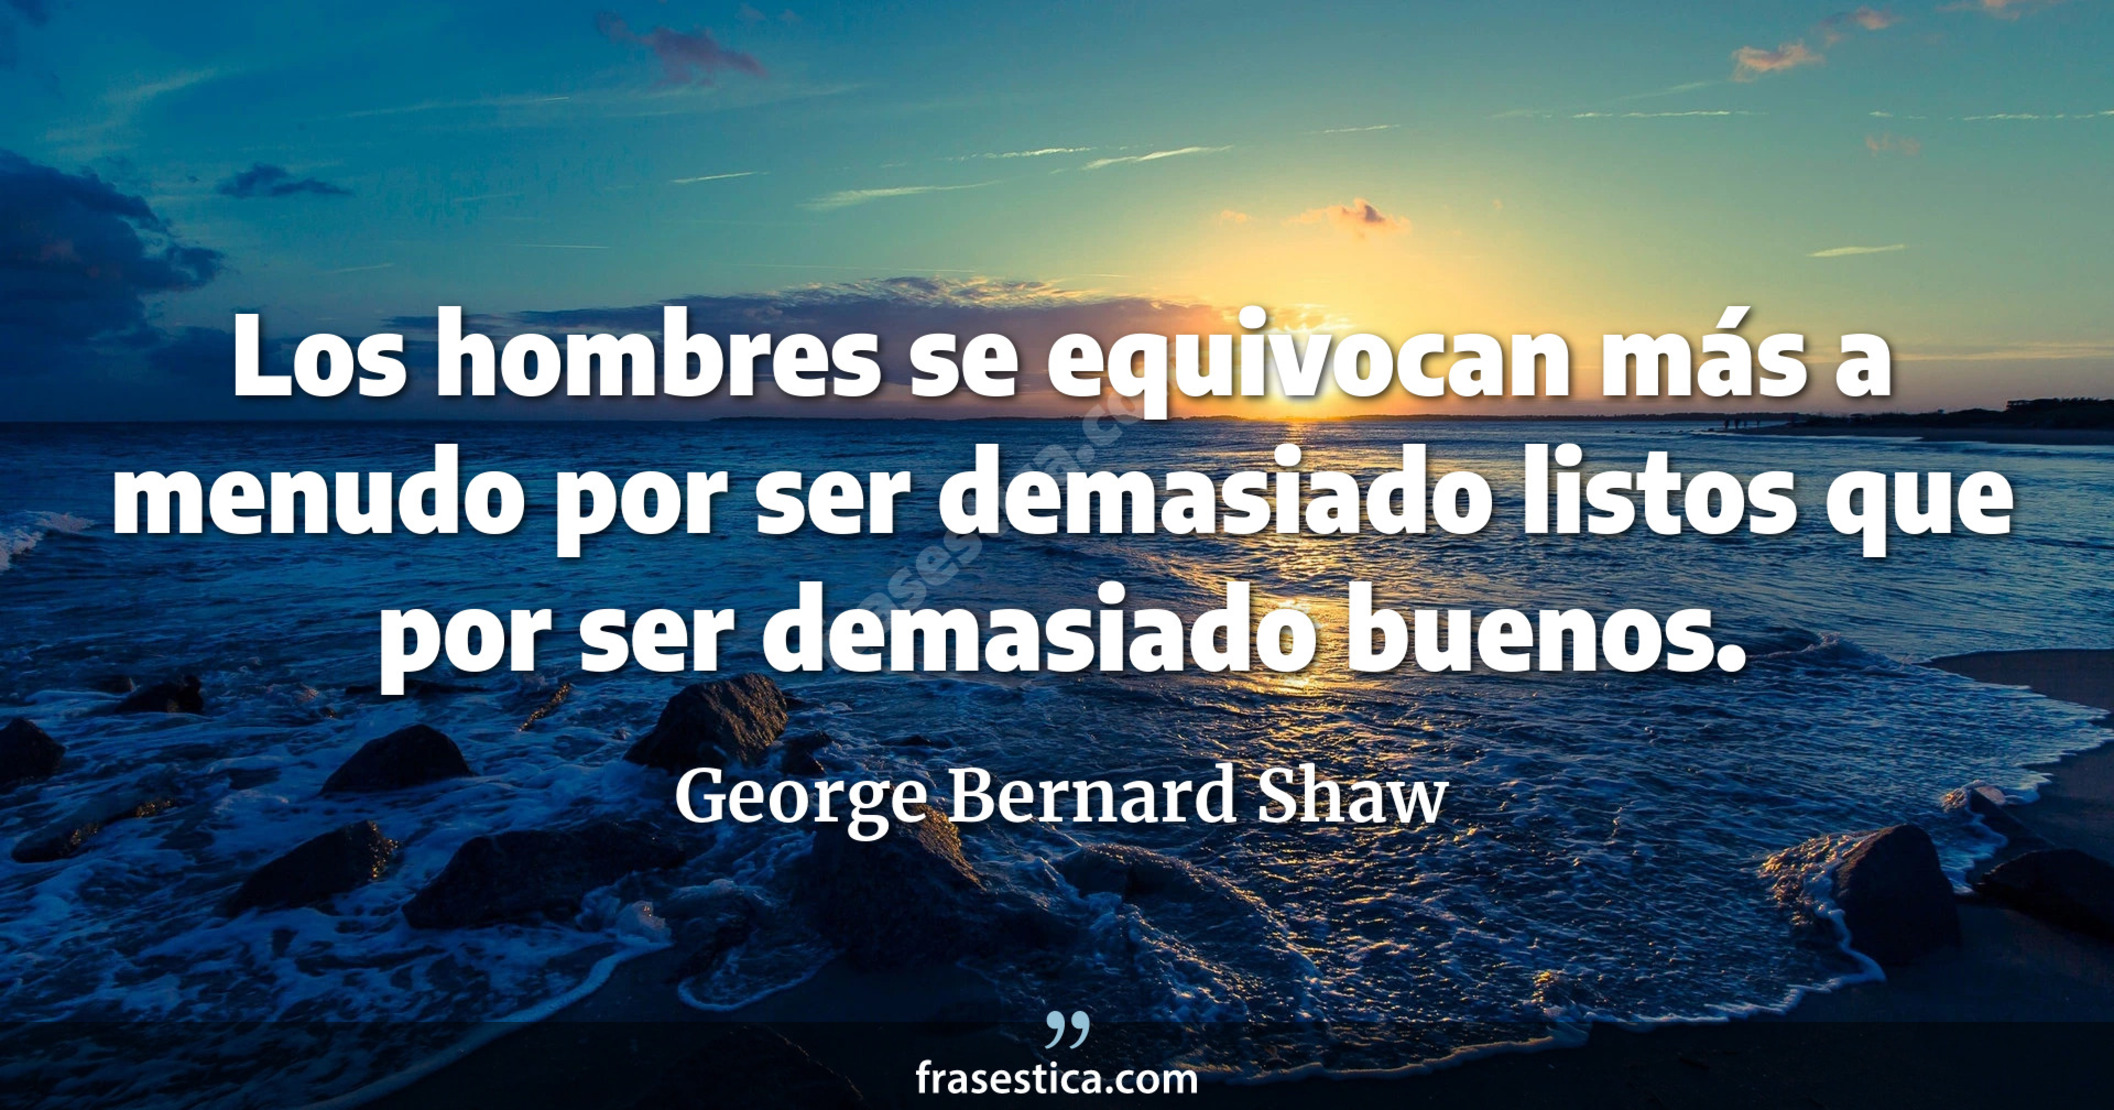 Los hombres se equivocan más a menudo por ser demasiado listos que por ser demasiado buenos. - George Bernard Shaw